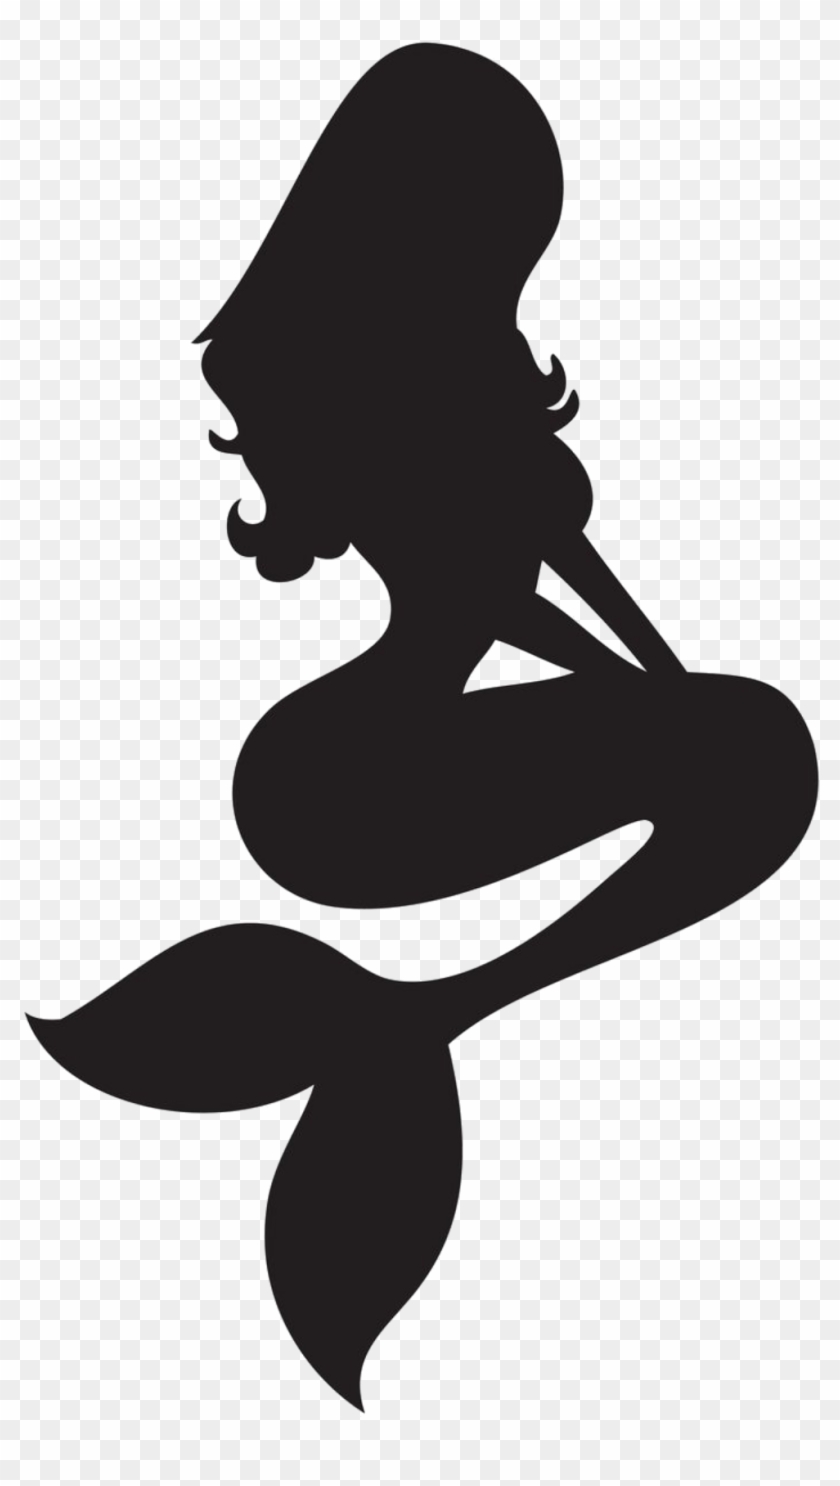 Download #mermaid #silhouette - Free Mermaid Silhouette Vector, HD ...